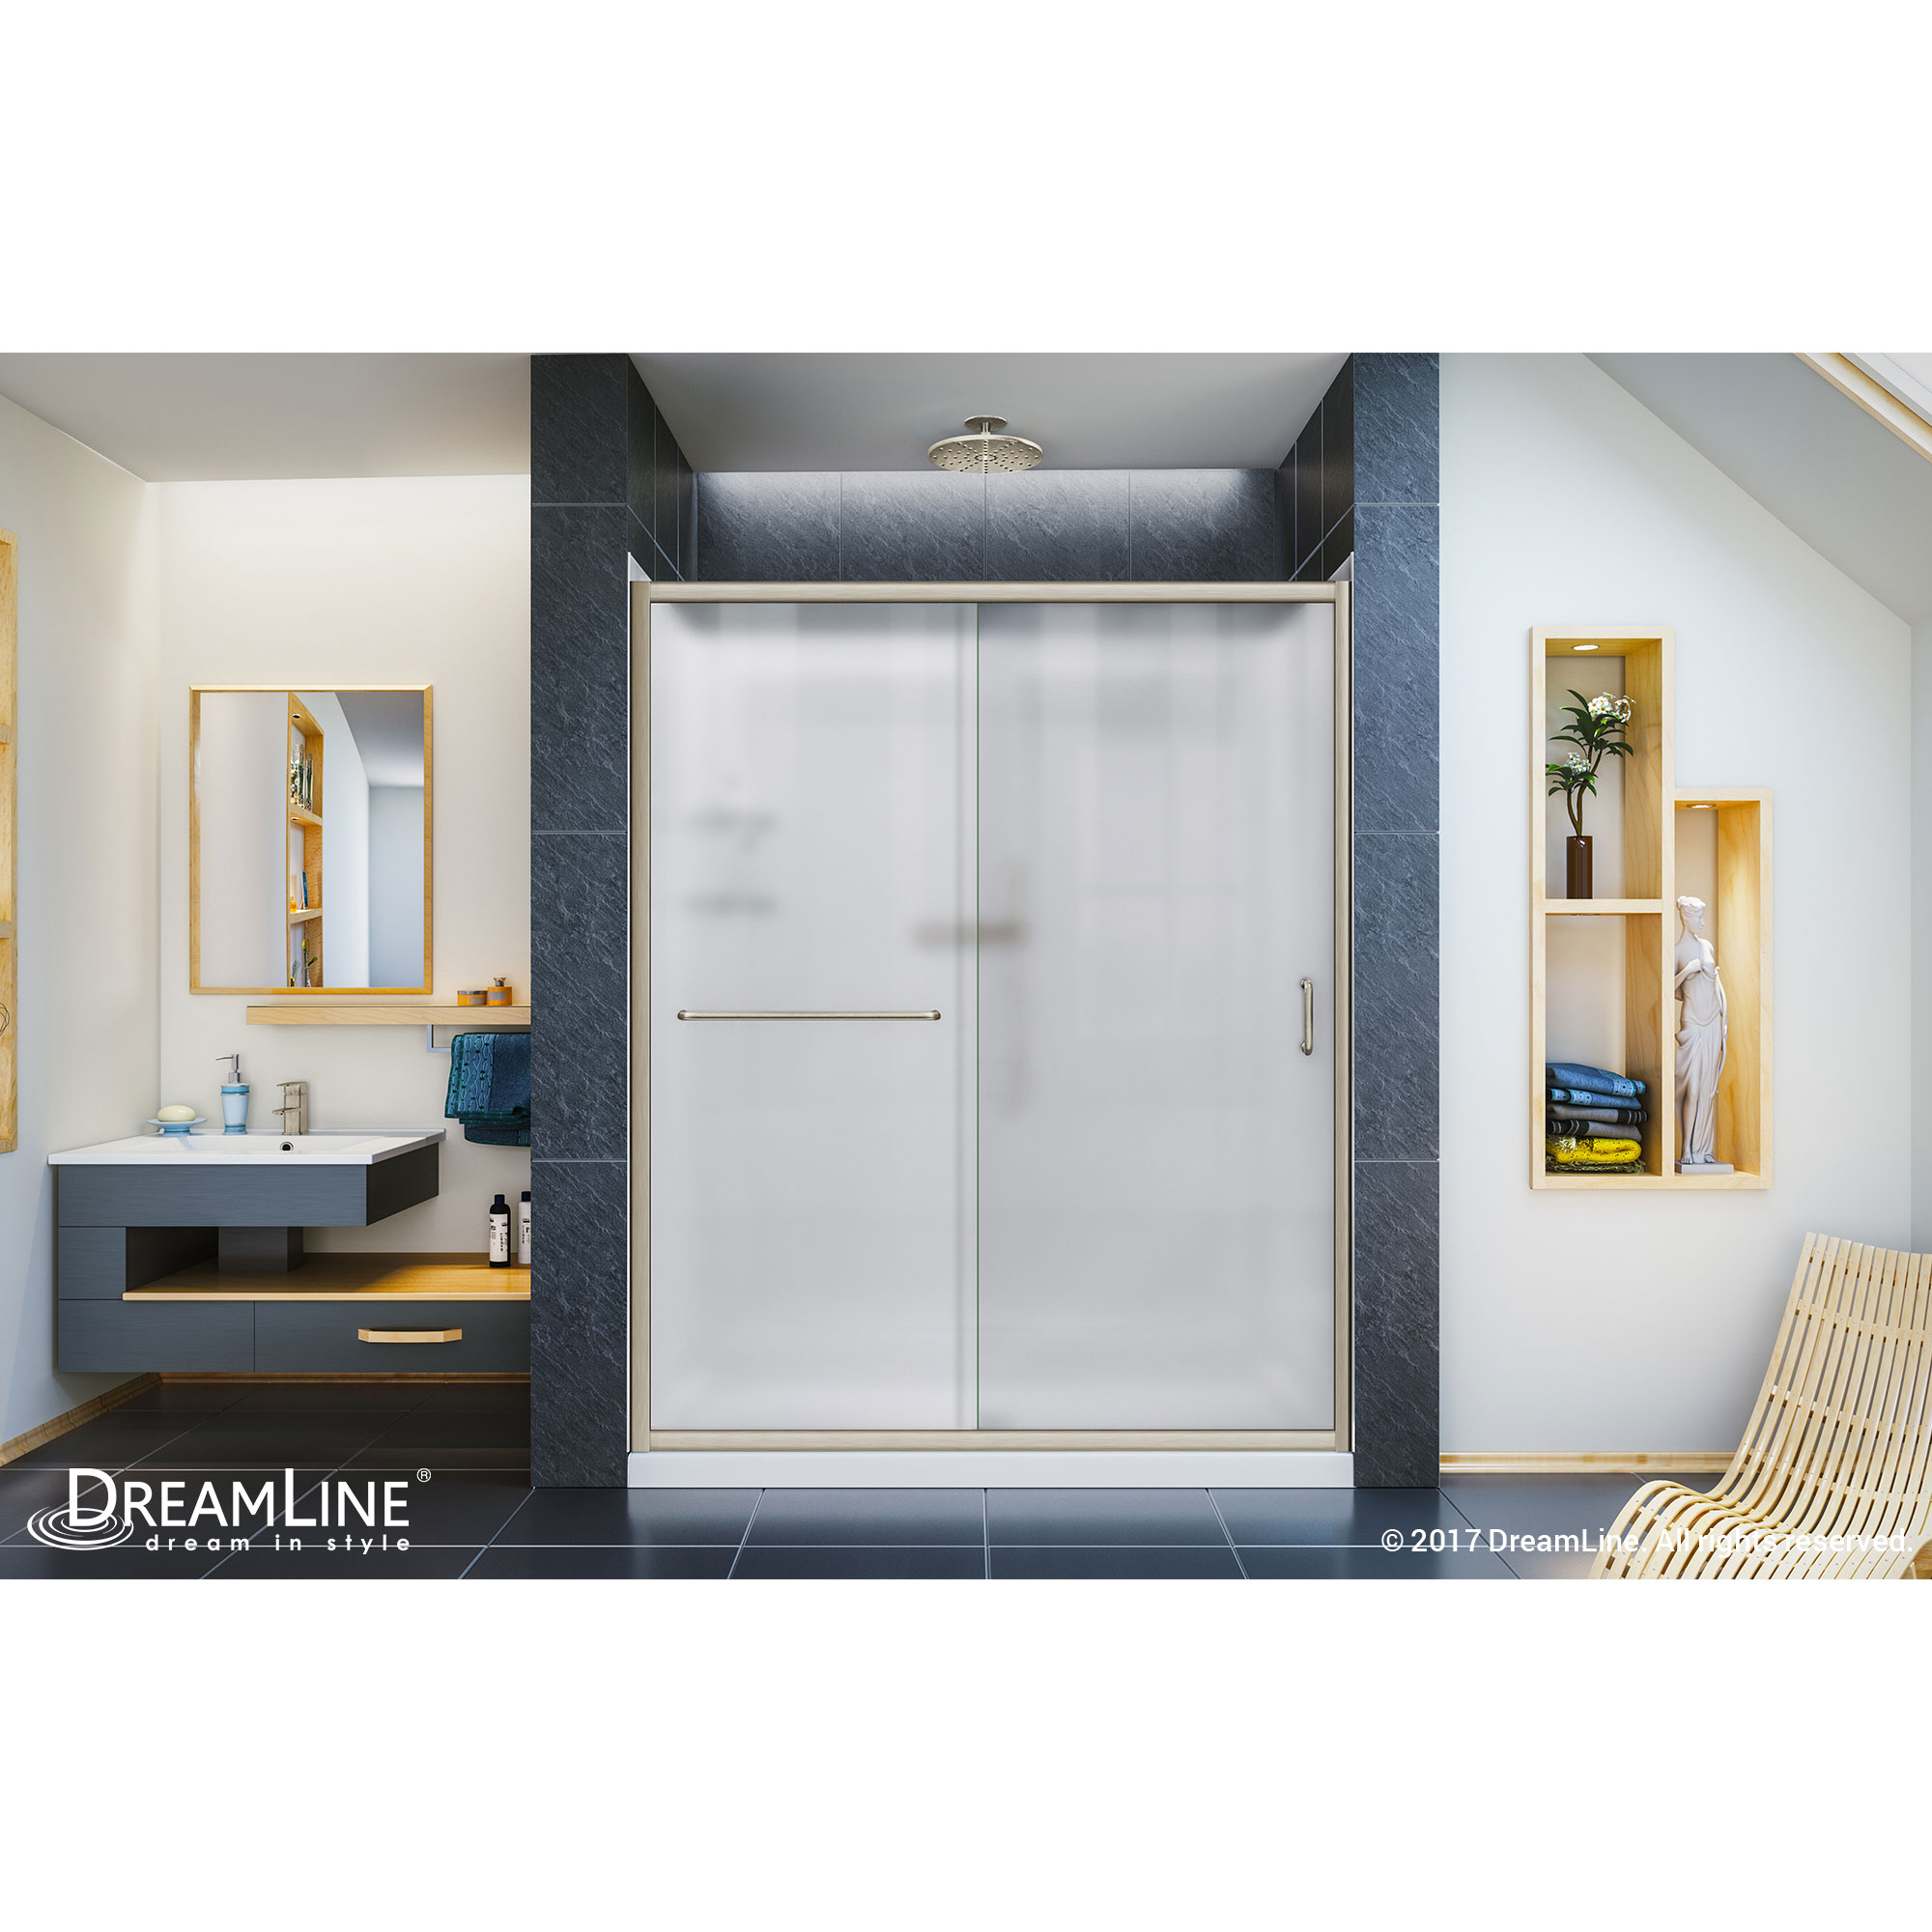 Infinity-Z Frameless Sliding Shower Door, 32" by 60" Shower Base & QWALL-5 Shower Backwall